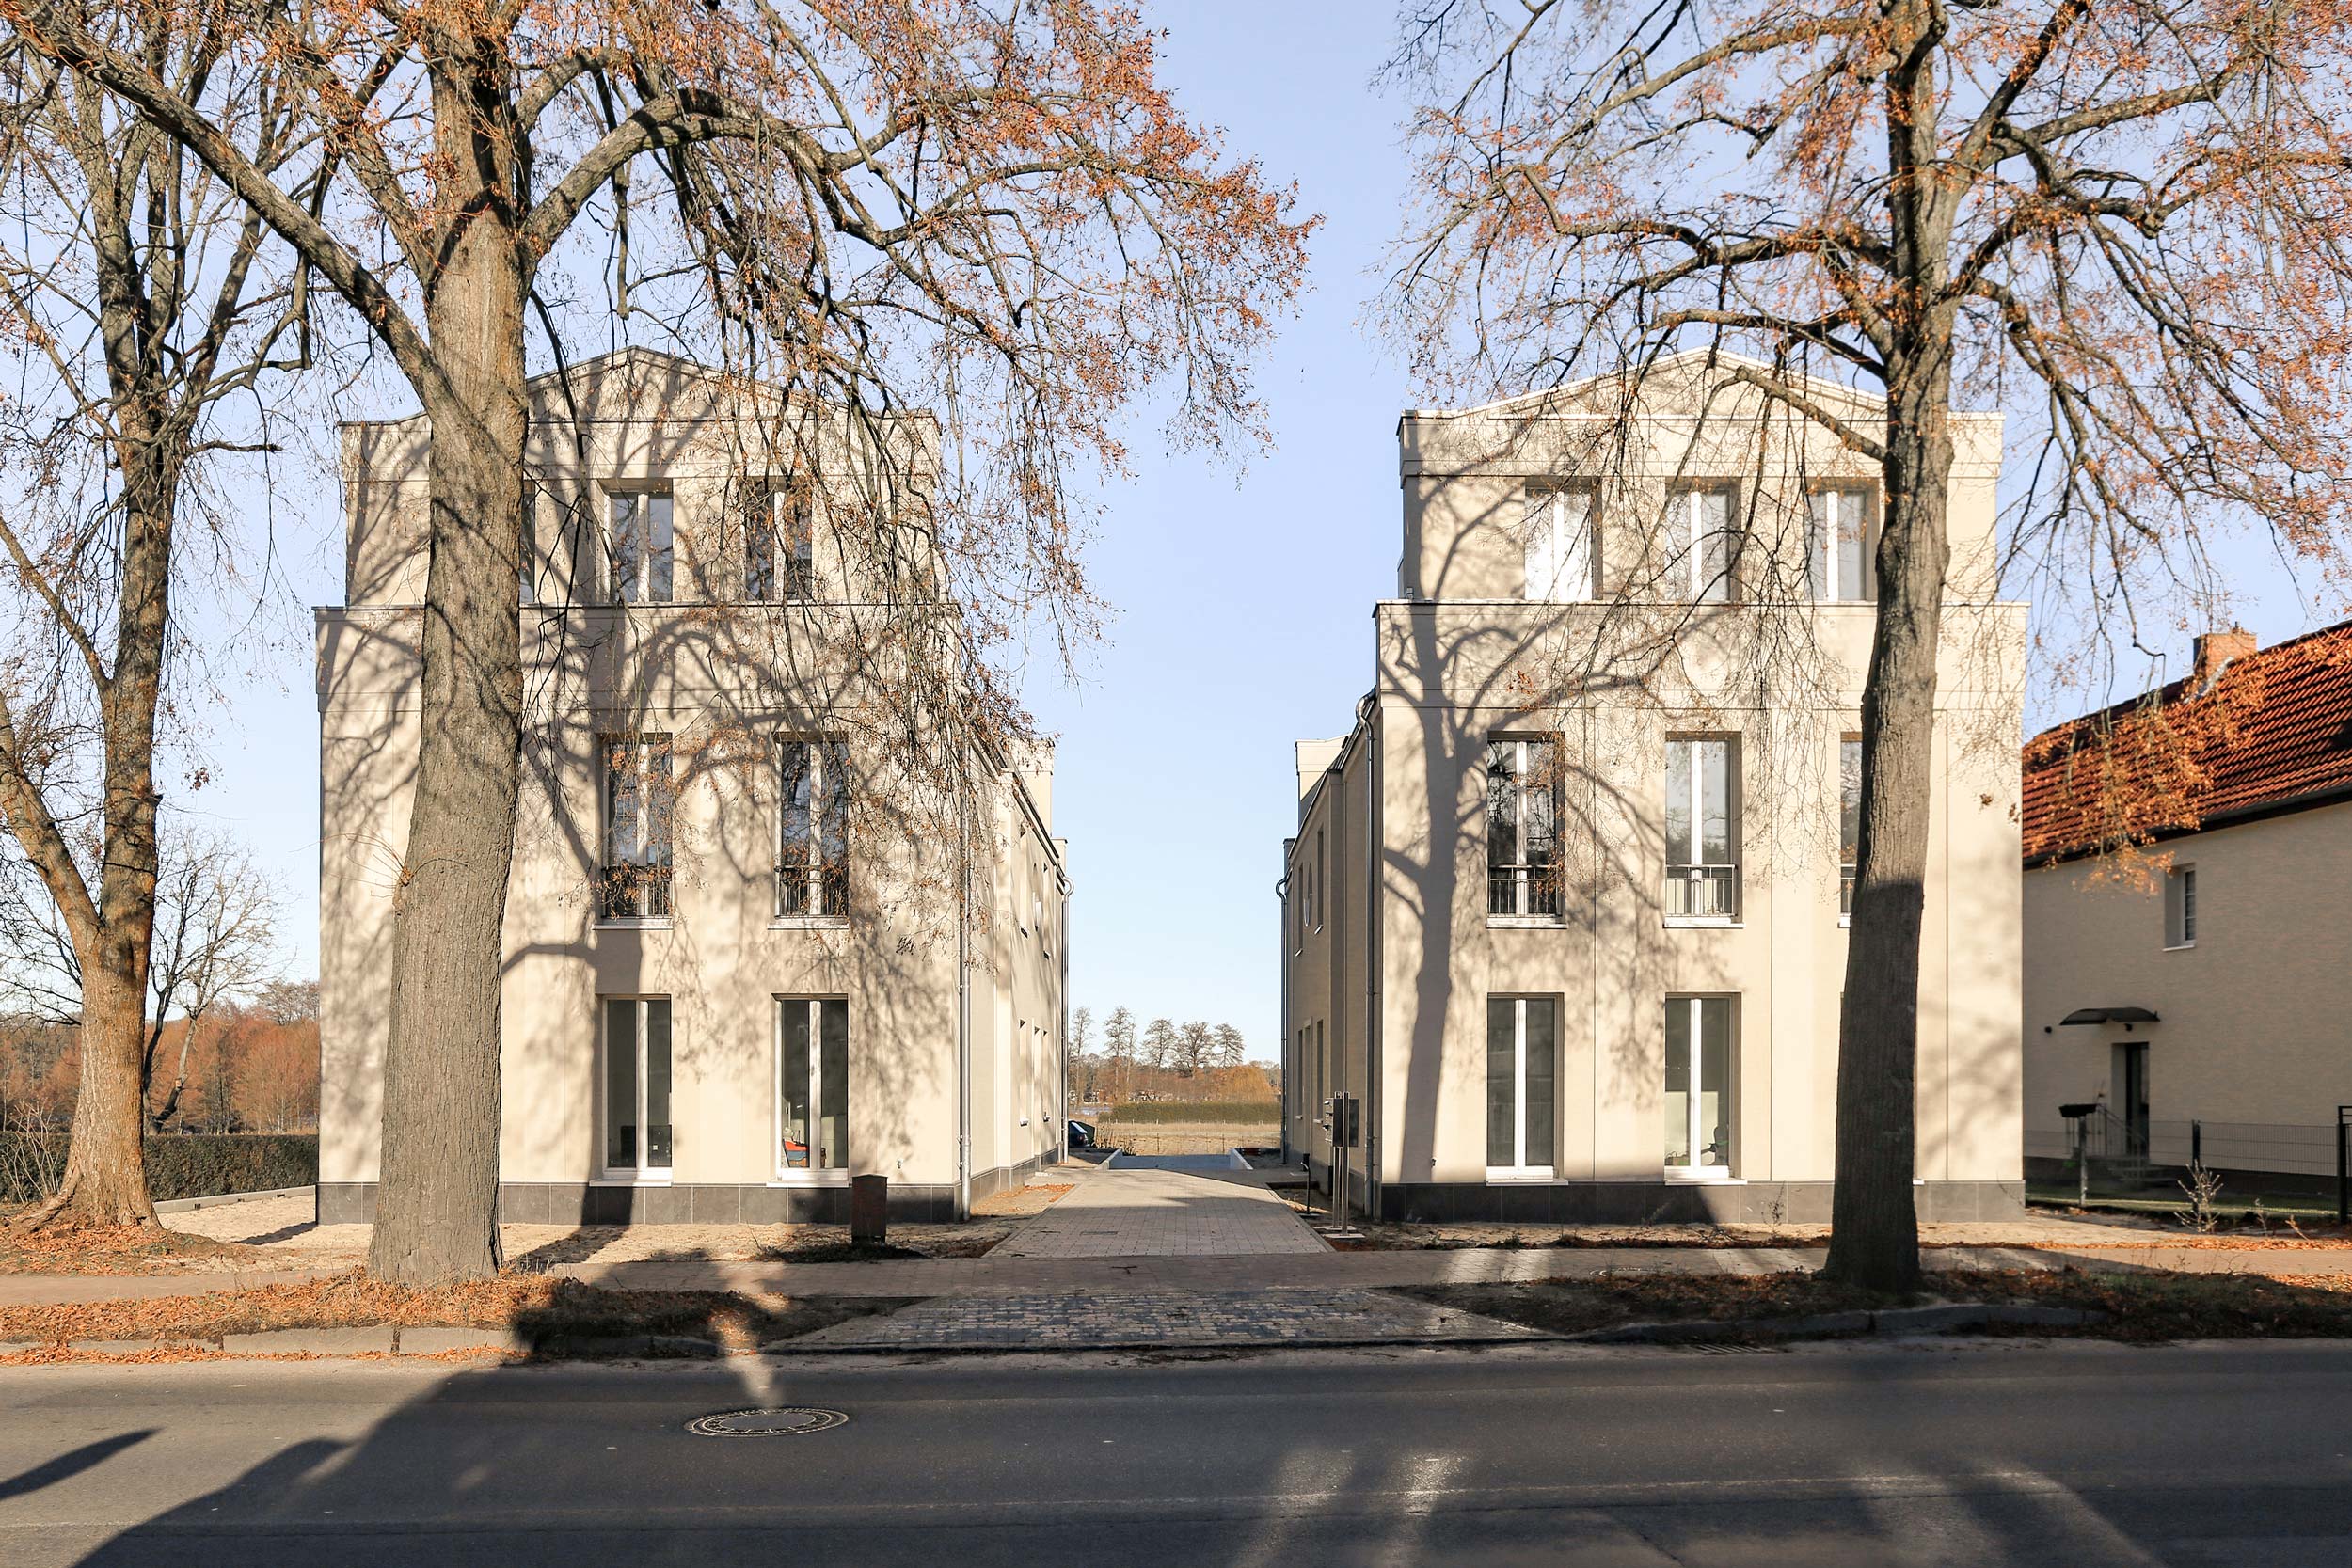 TWINS - Neubau einer Wohnanlage für kostengünstiges Wohnen mit hohem Standard bei Berlin